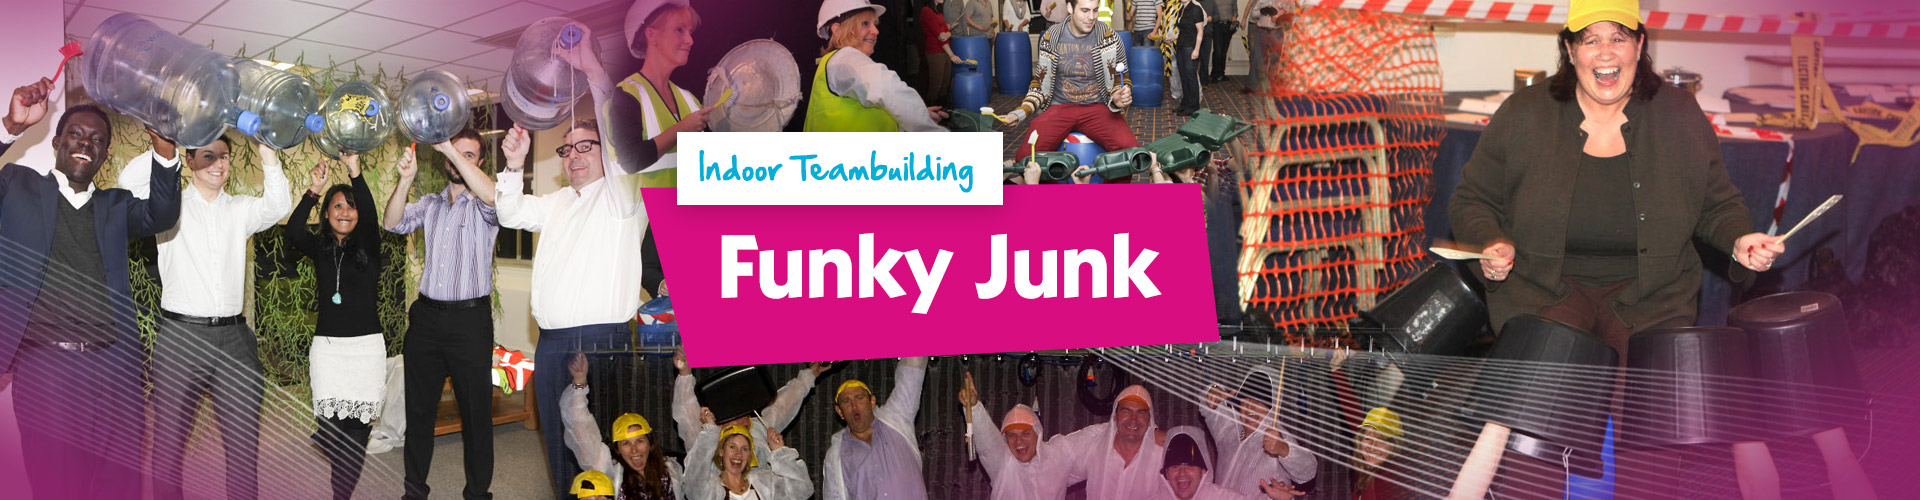 Teambuilding | Indoor Funky Junk